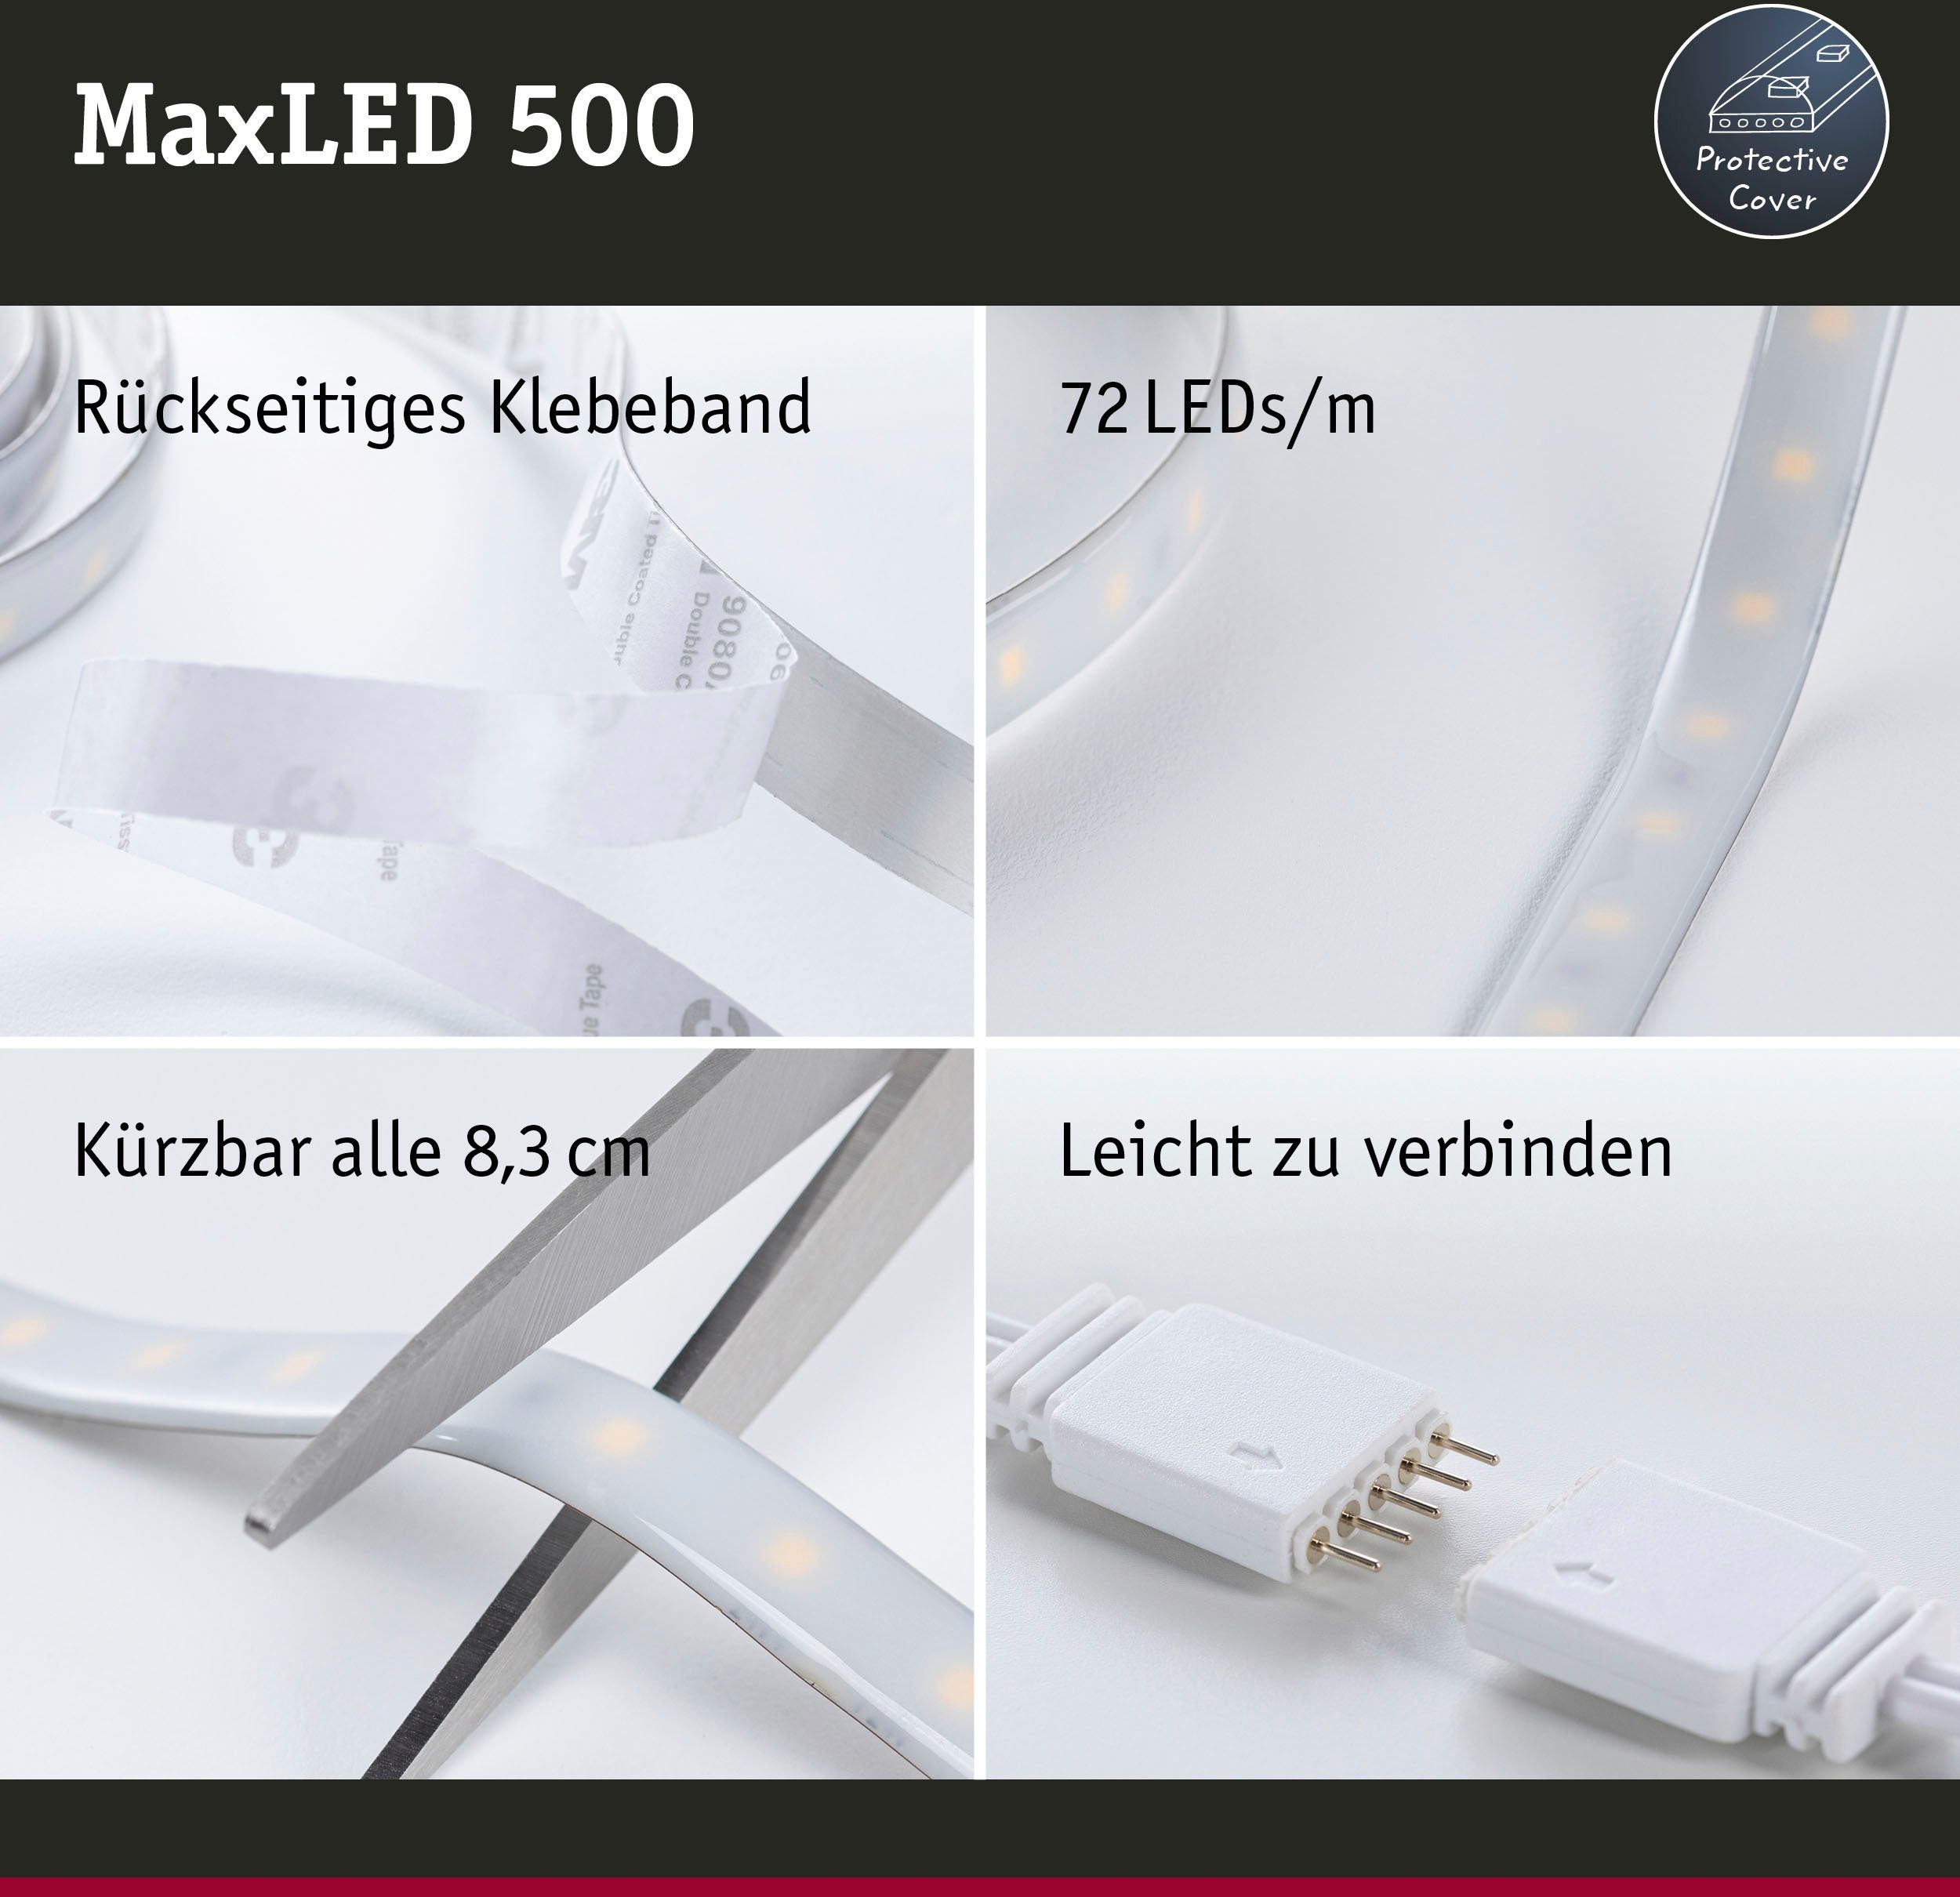 Home MaxLED IP44 2000lm beschichtet, 500 33W LED-Streifen RGBW 5m Paulmann Zigbee Smart 1-flammig